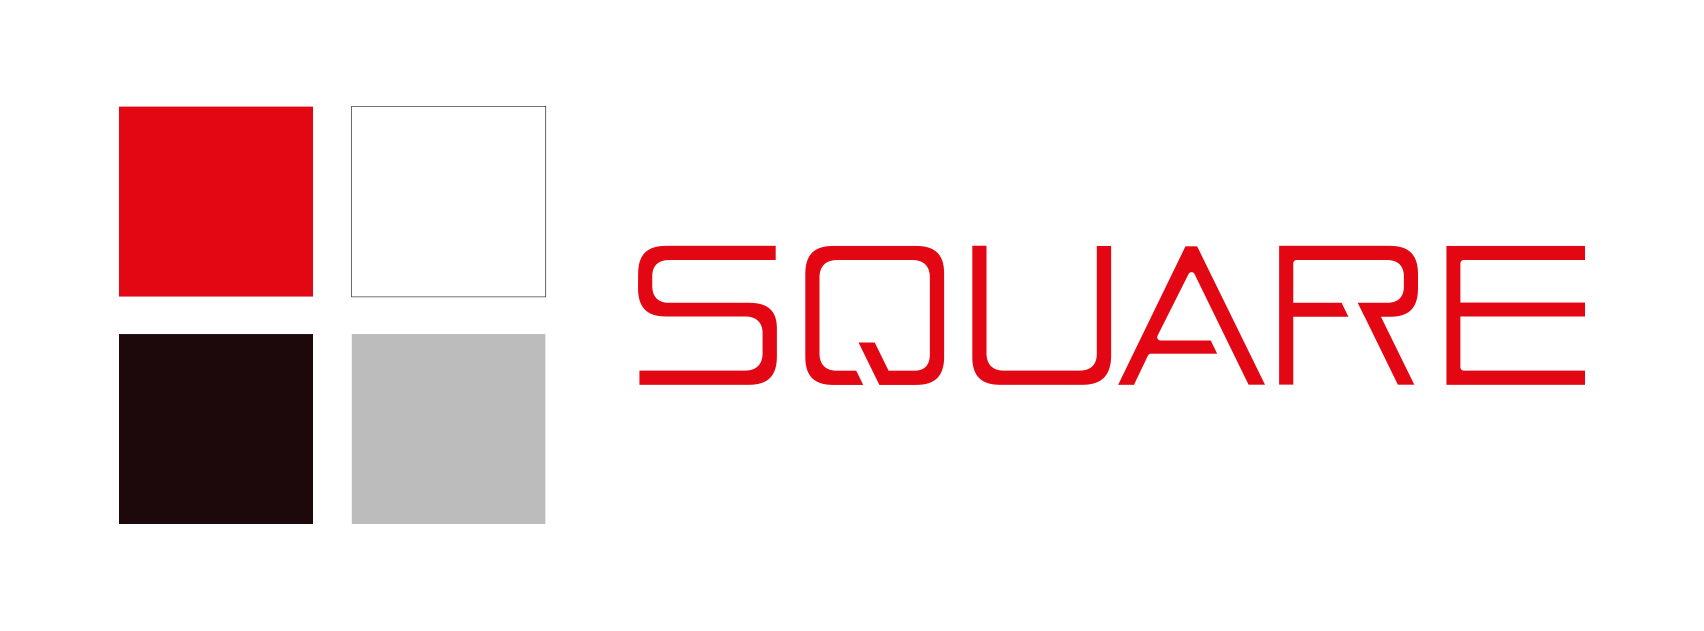 Square Event - Logo Horizontal